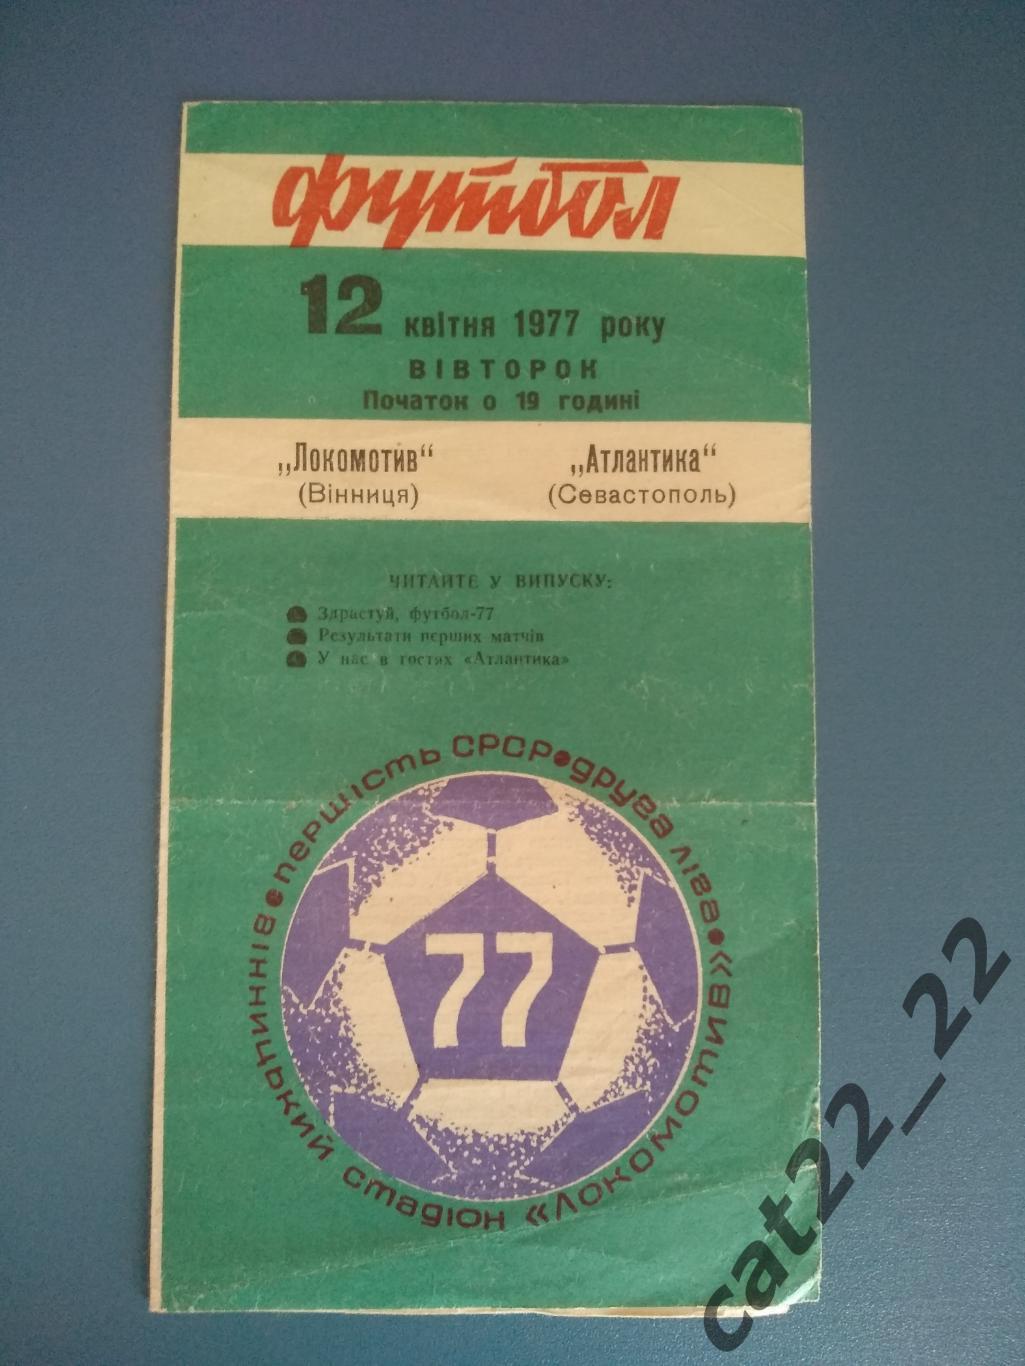 Локомотив Винница - Атлантика Севастополь Крым 1977